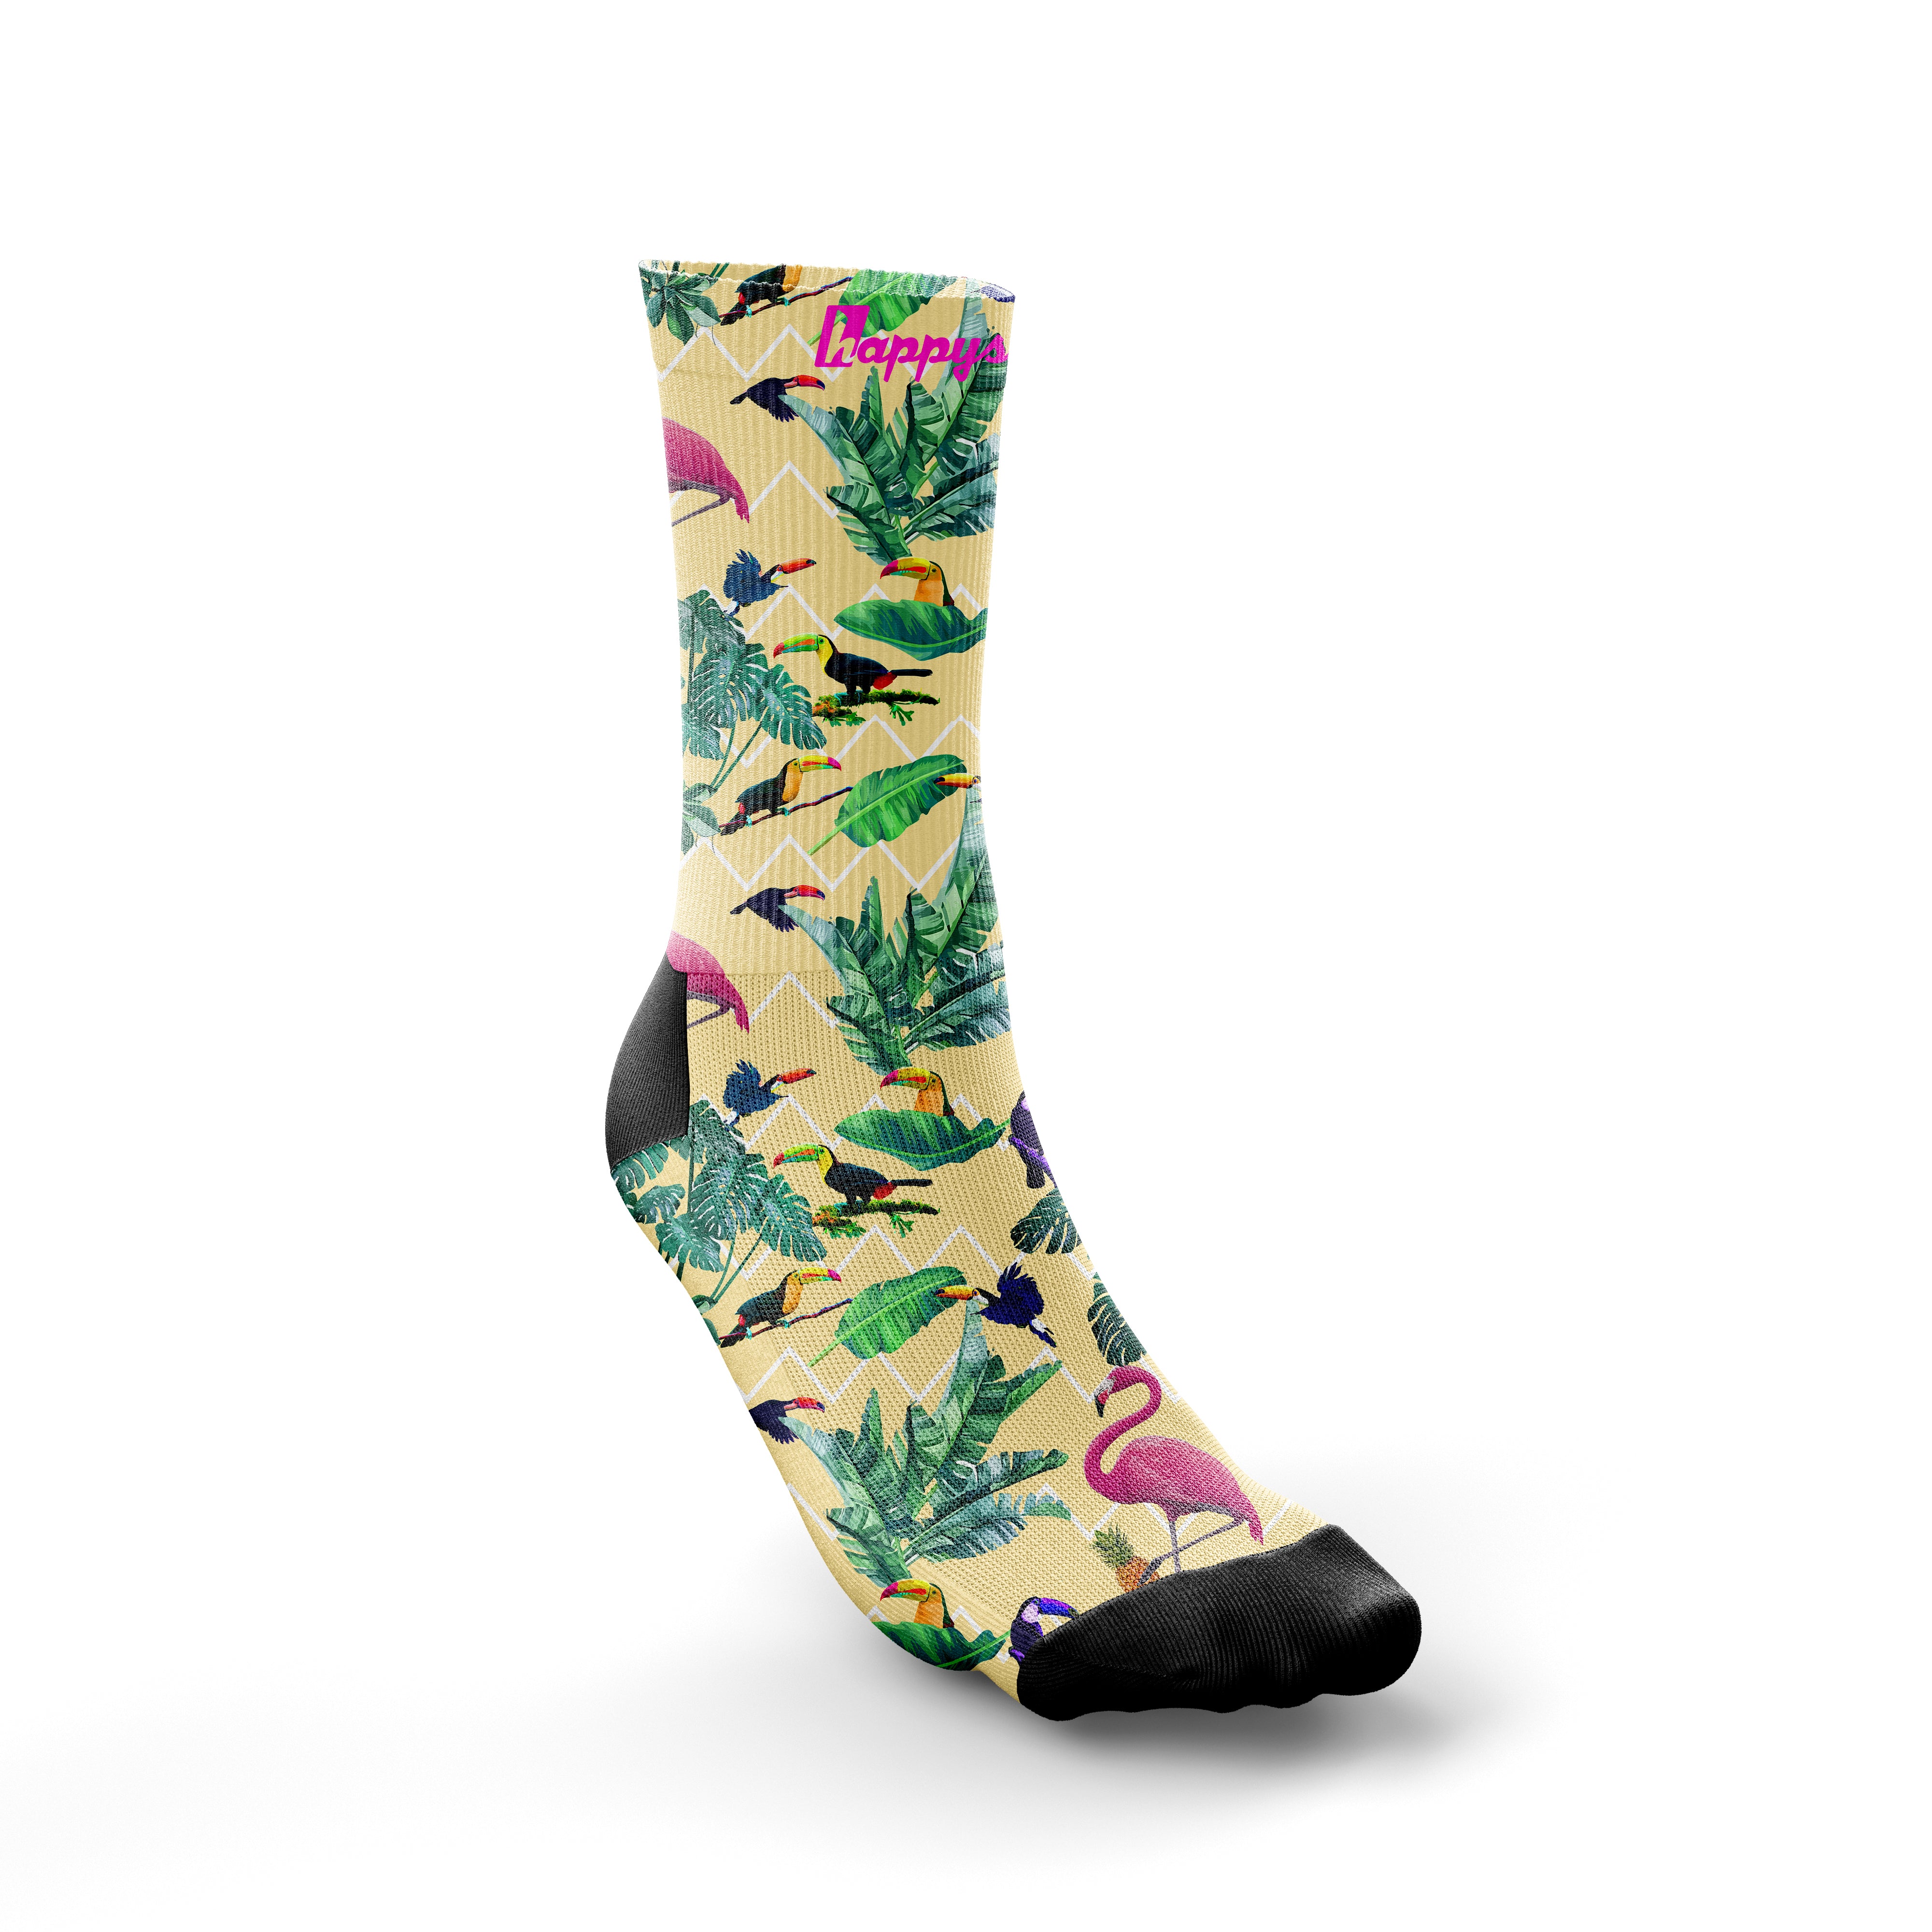 'Tropic-like-it's-hot'' socks